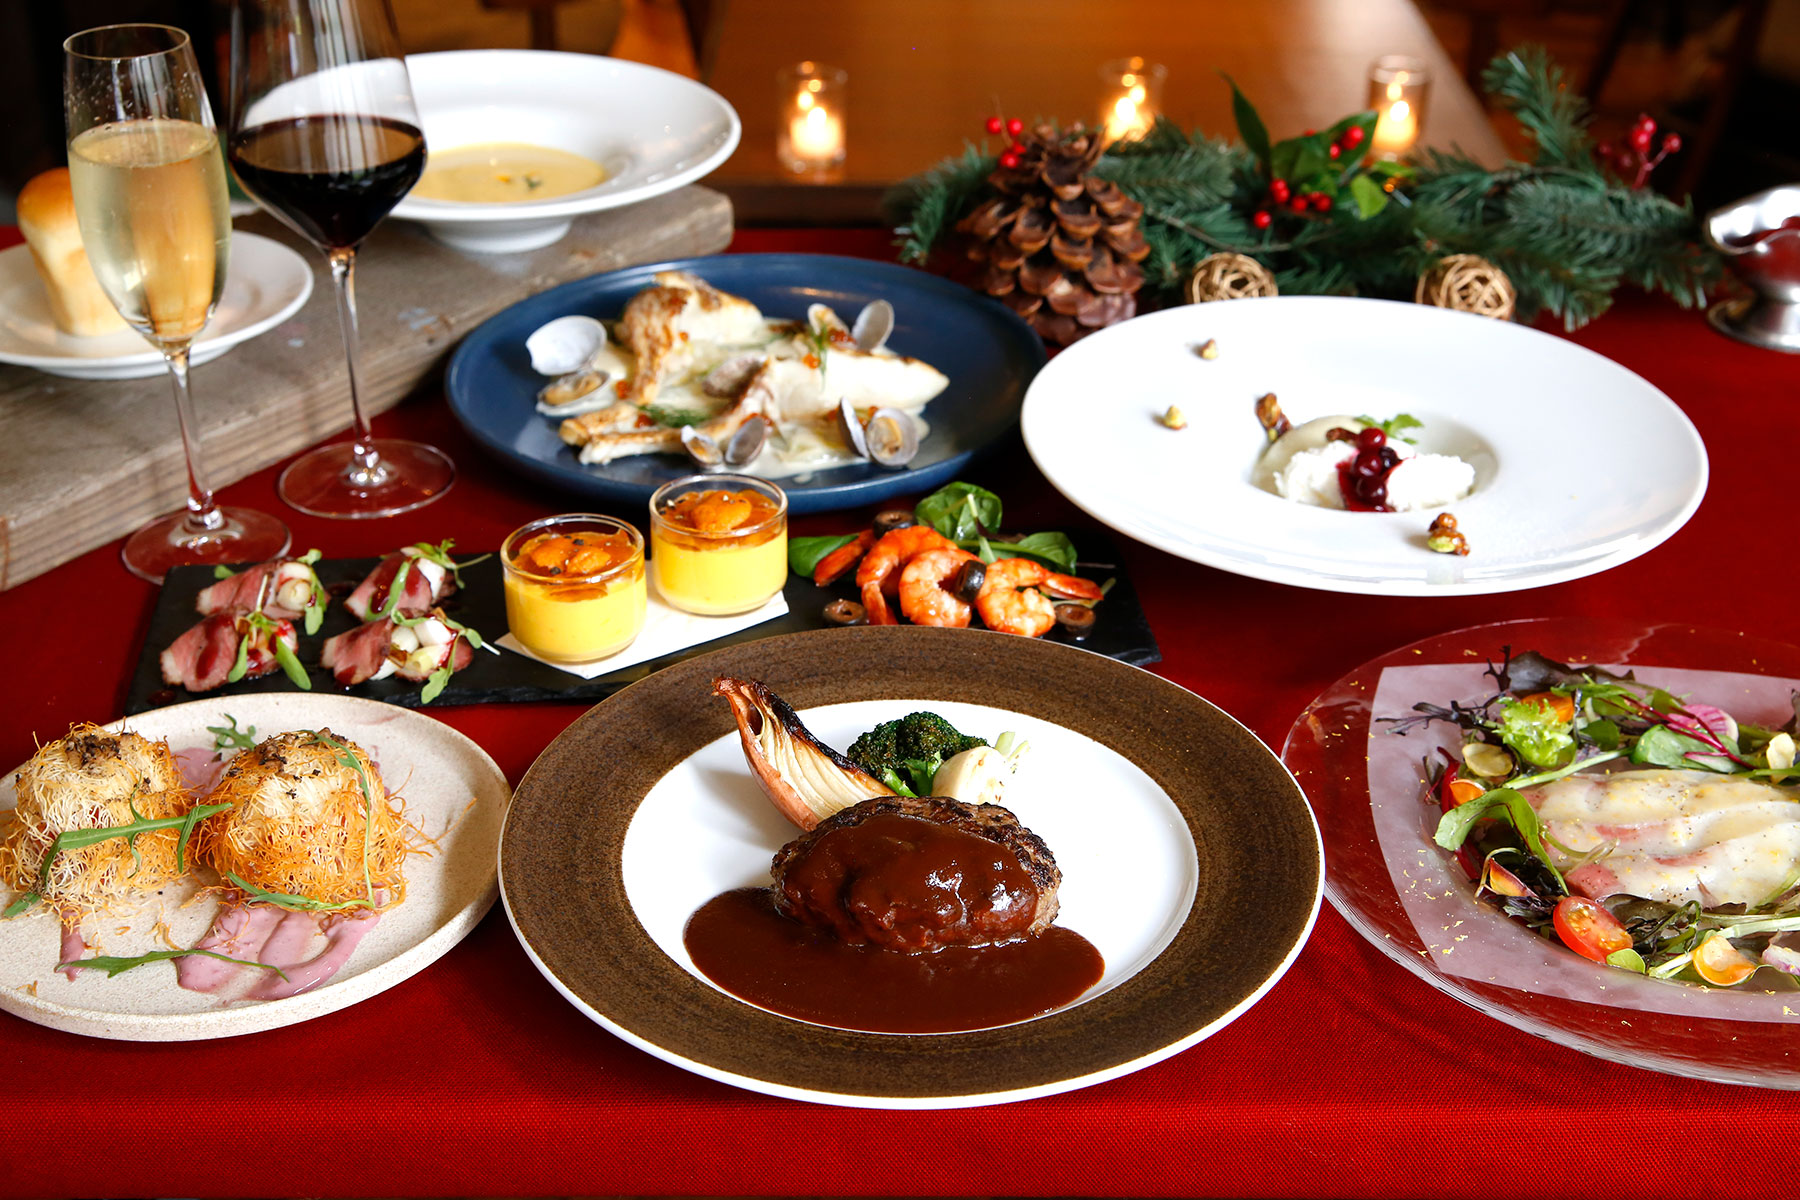 神戸の聖夜を愉しむクリスマスディナーが 洋食屋 神戸デュシャン から19年12月21日 土 25日 水 期間限定で登場 神戸牛挽肉ハンバーグなど 神戸ならではの洋食が楽しめる 株式会社ポトマックのプレスリリース